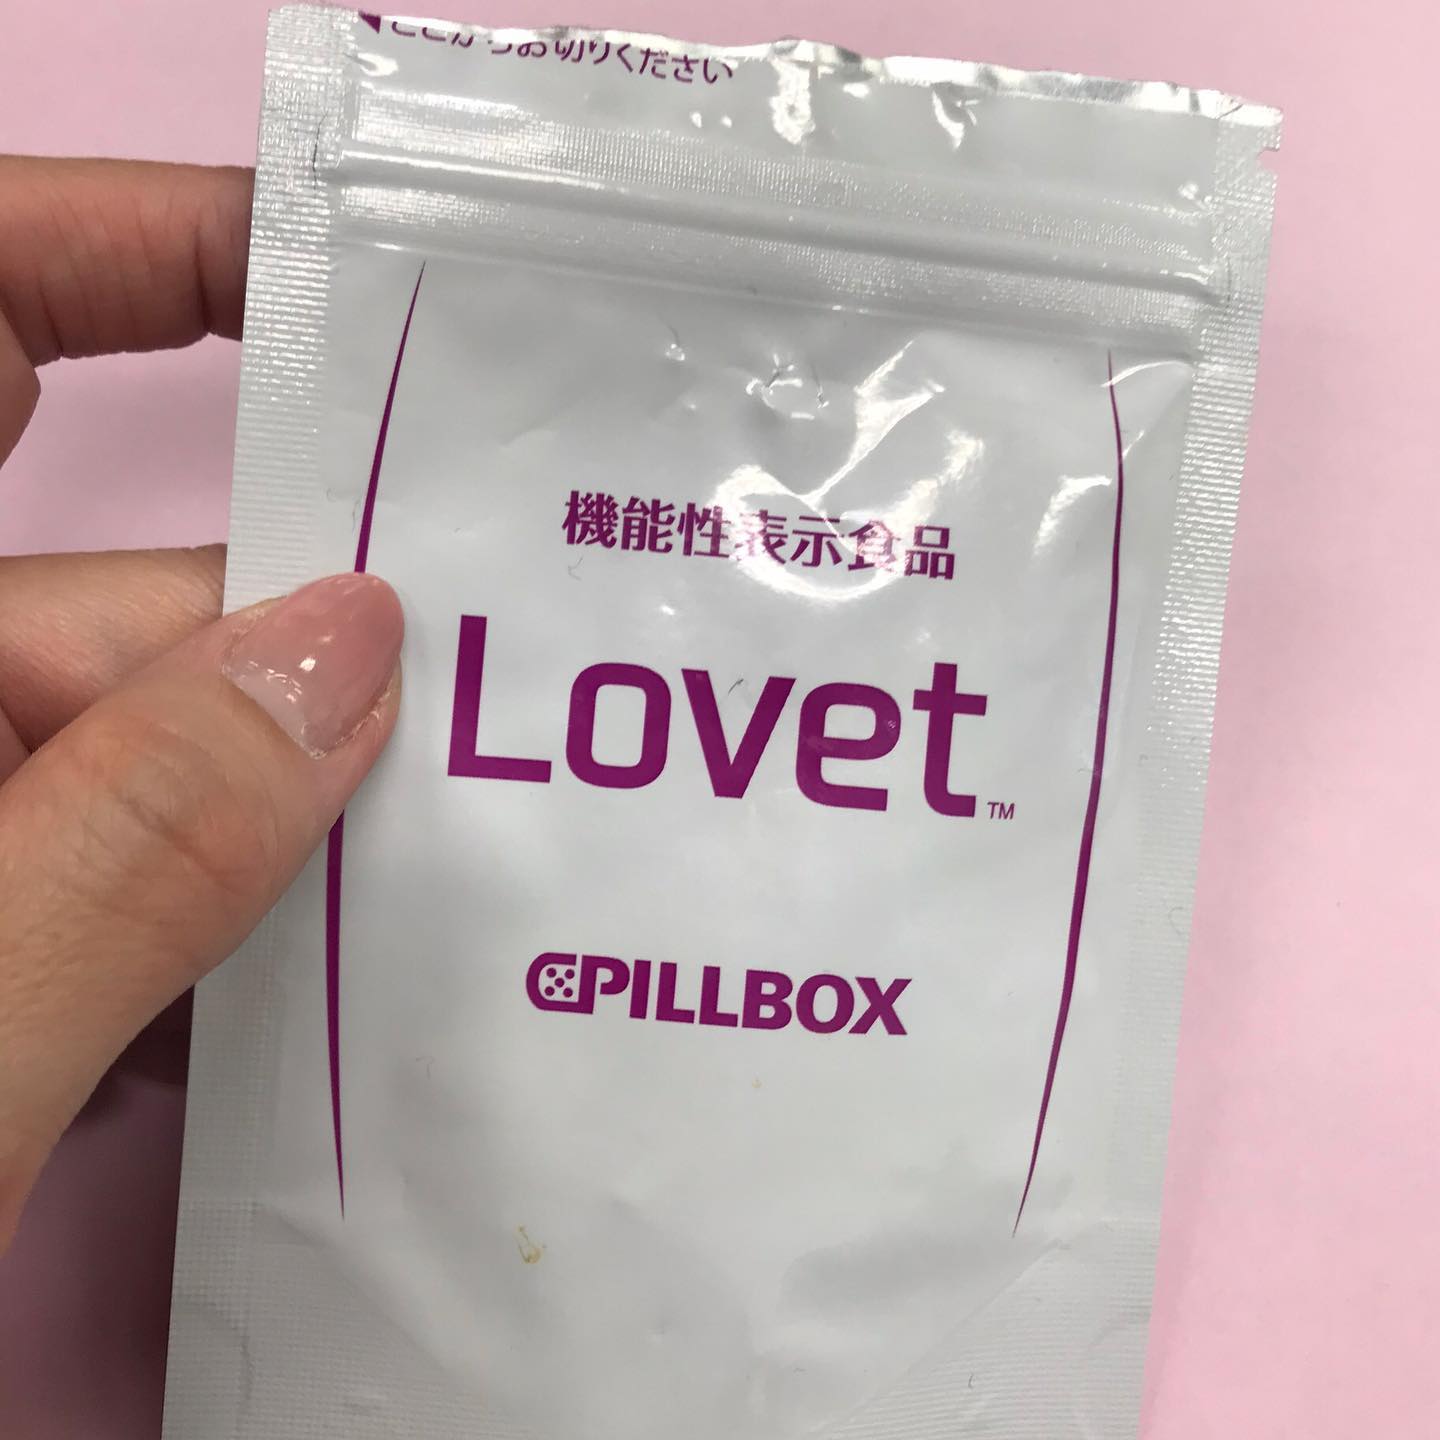 口コミ投稿：食事の脂肪や糖をなんとかしたい私に。CPILLBOXさんの機能性表示食品「Lovet」を使用…